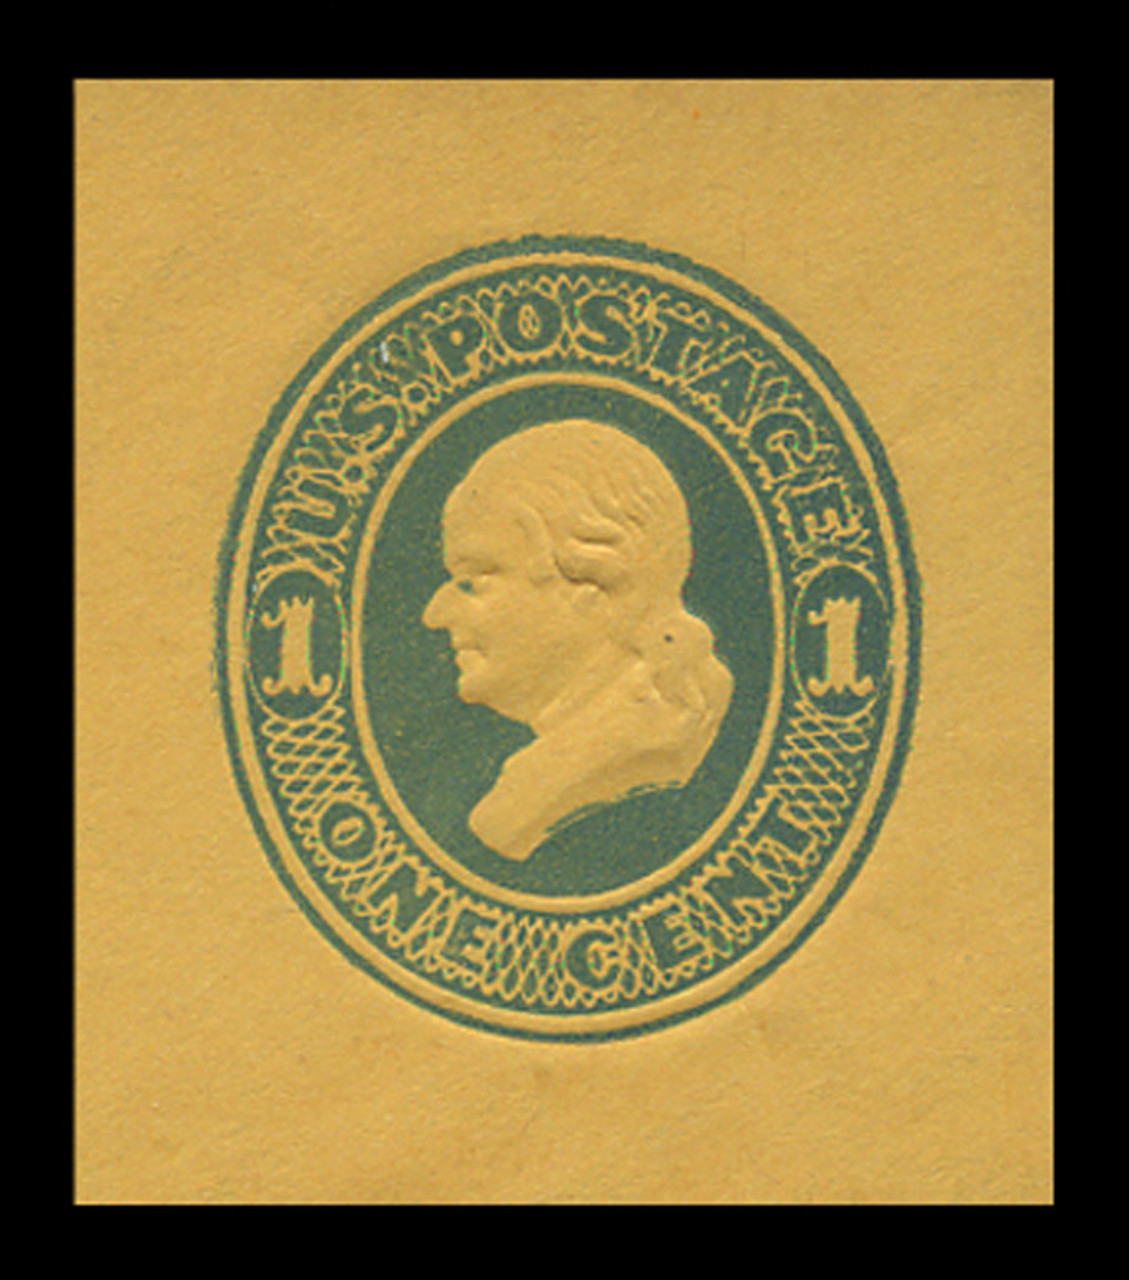 USA Scott # U 116, 1874-86 1c Franklin, Scott Die U35, light blue on orange - Mint Cut Square